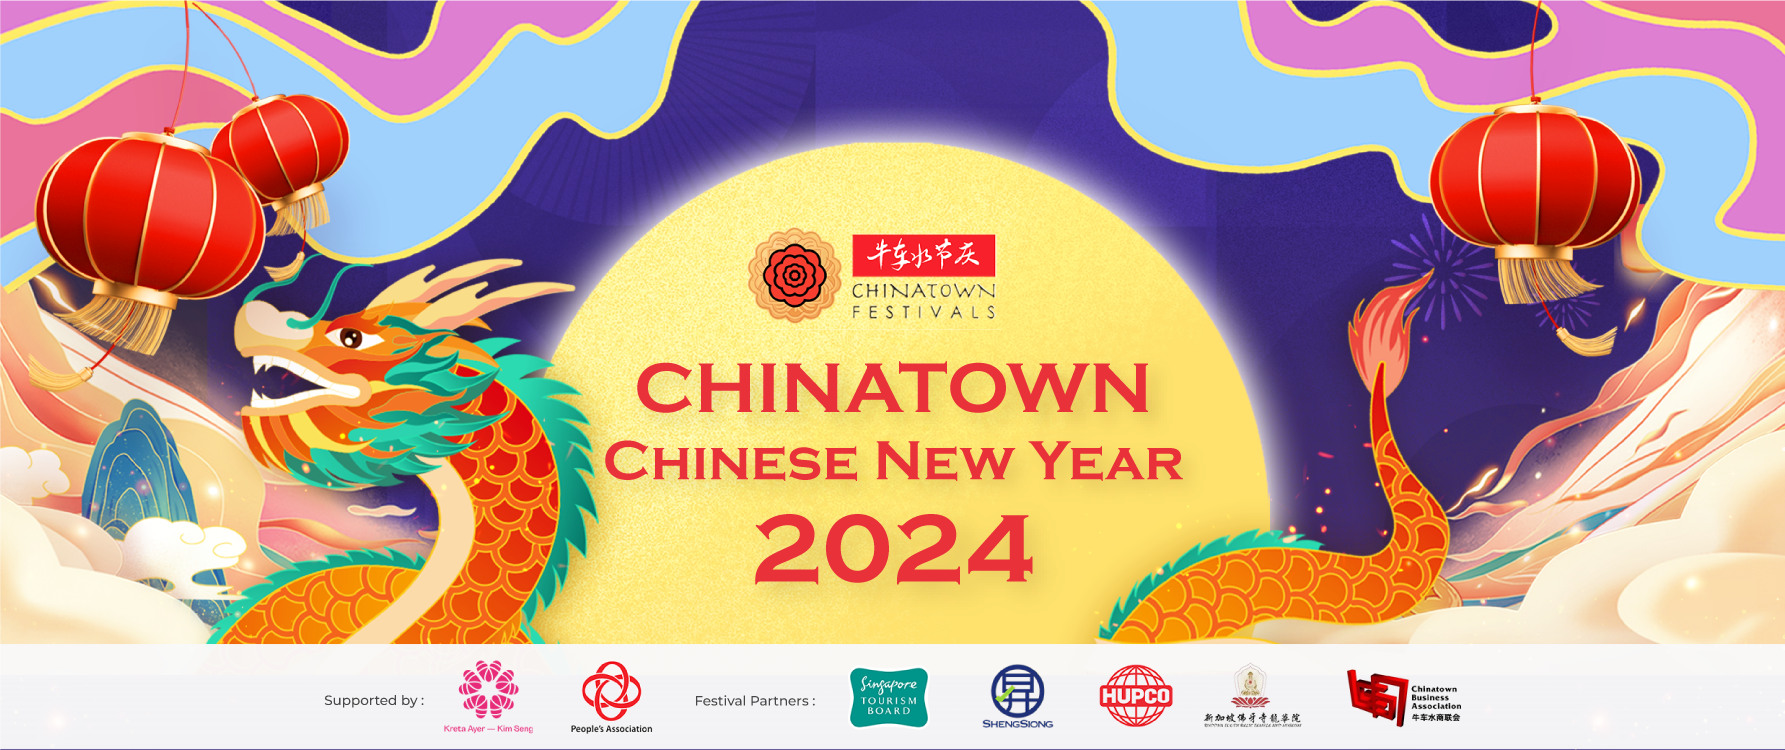 Chinatown Chinese New Year 2024